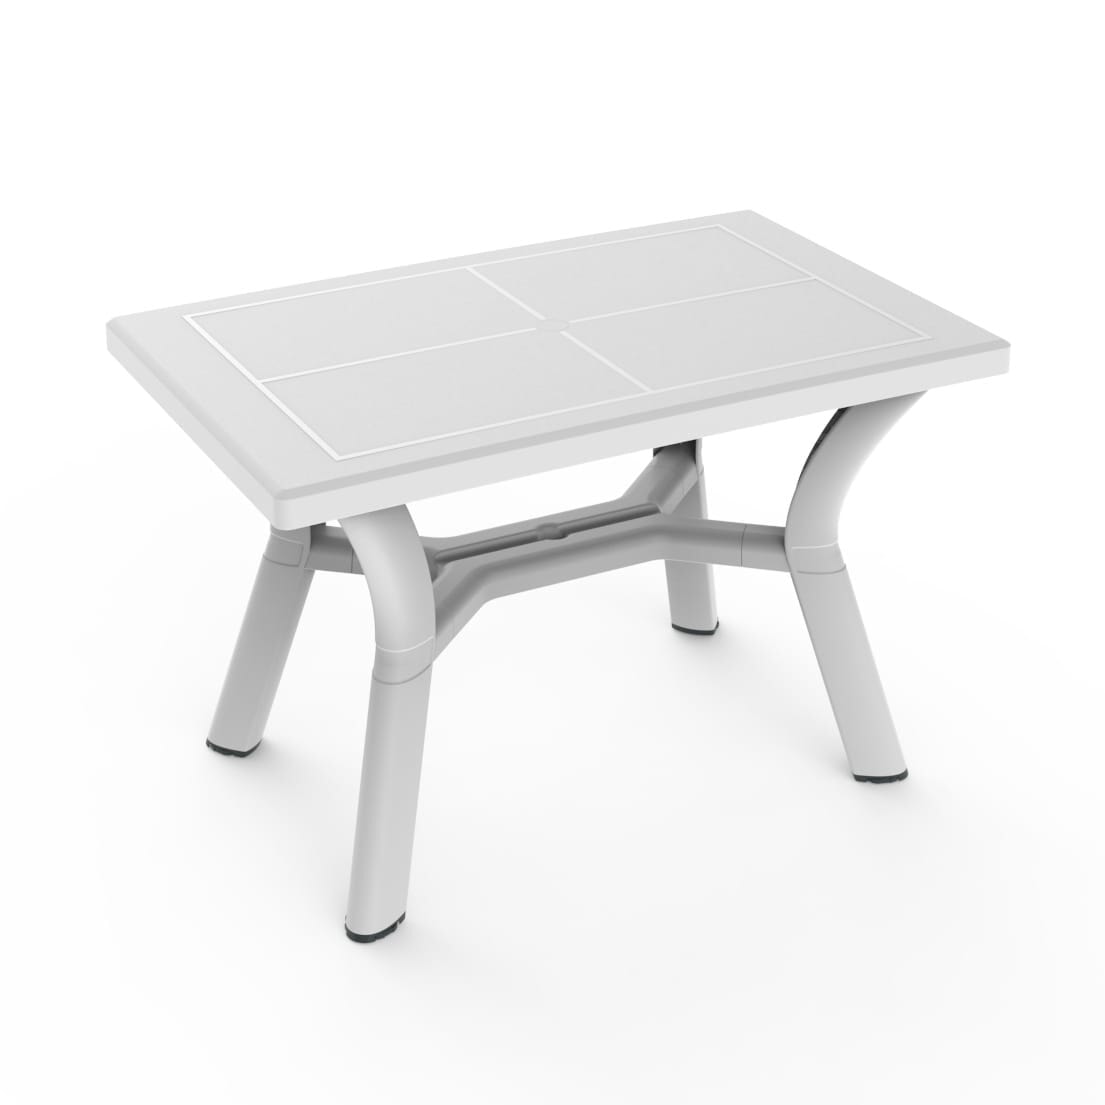 Garbar Dalia rectangular table outdoor 115x72 white